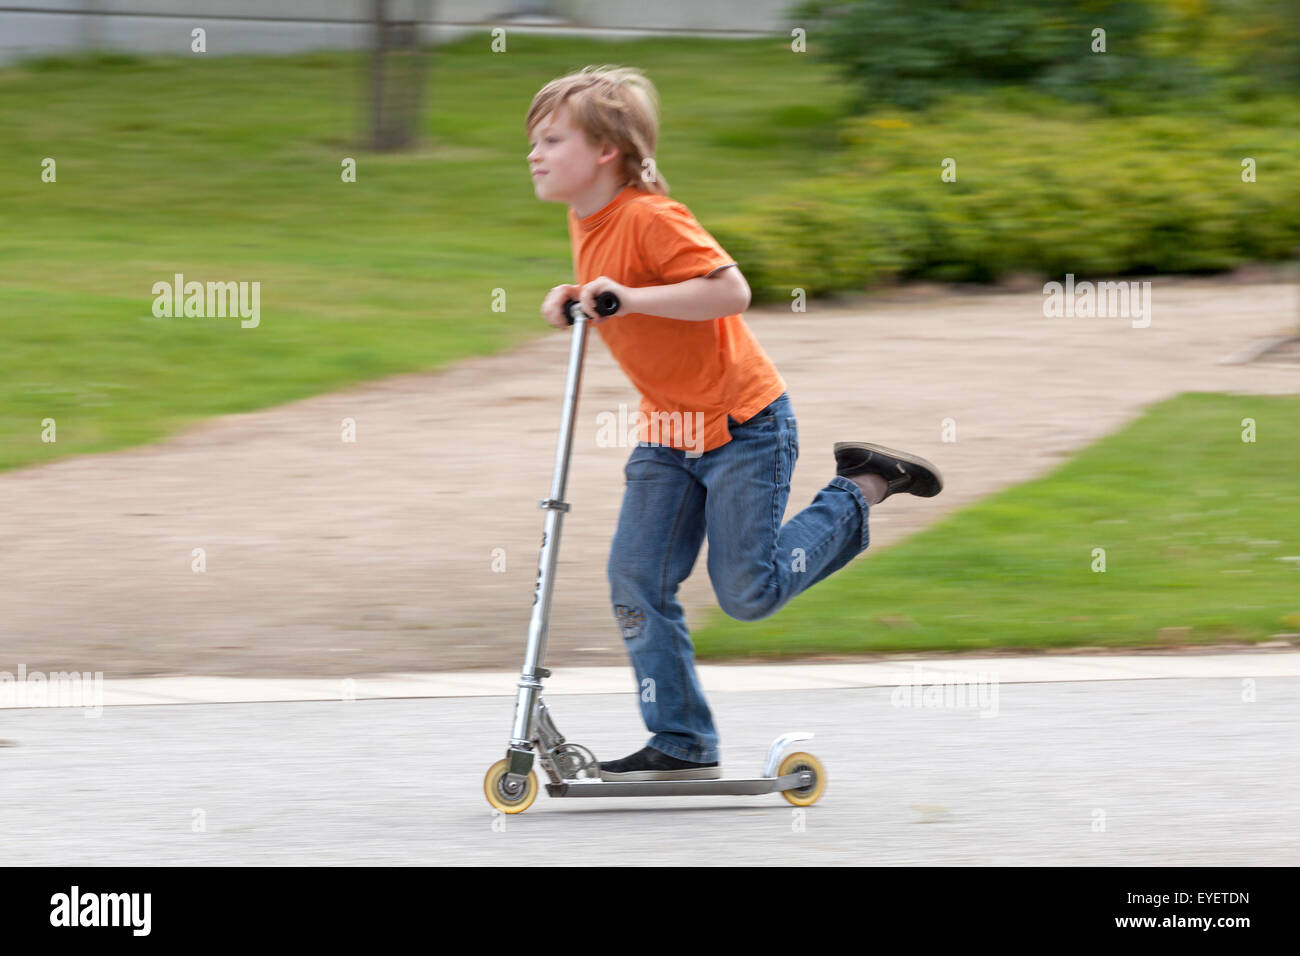 Jeune garçon sur un scooter Banque D'Images